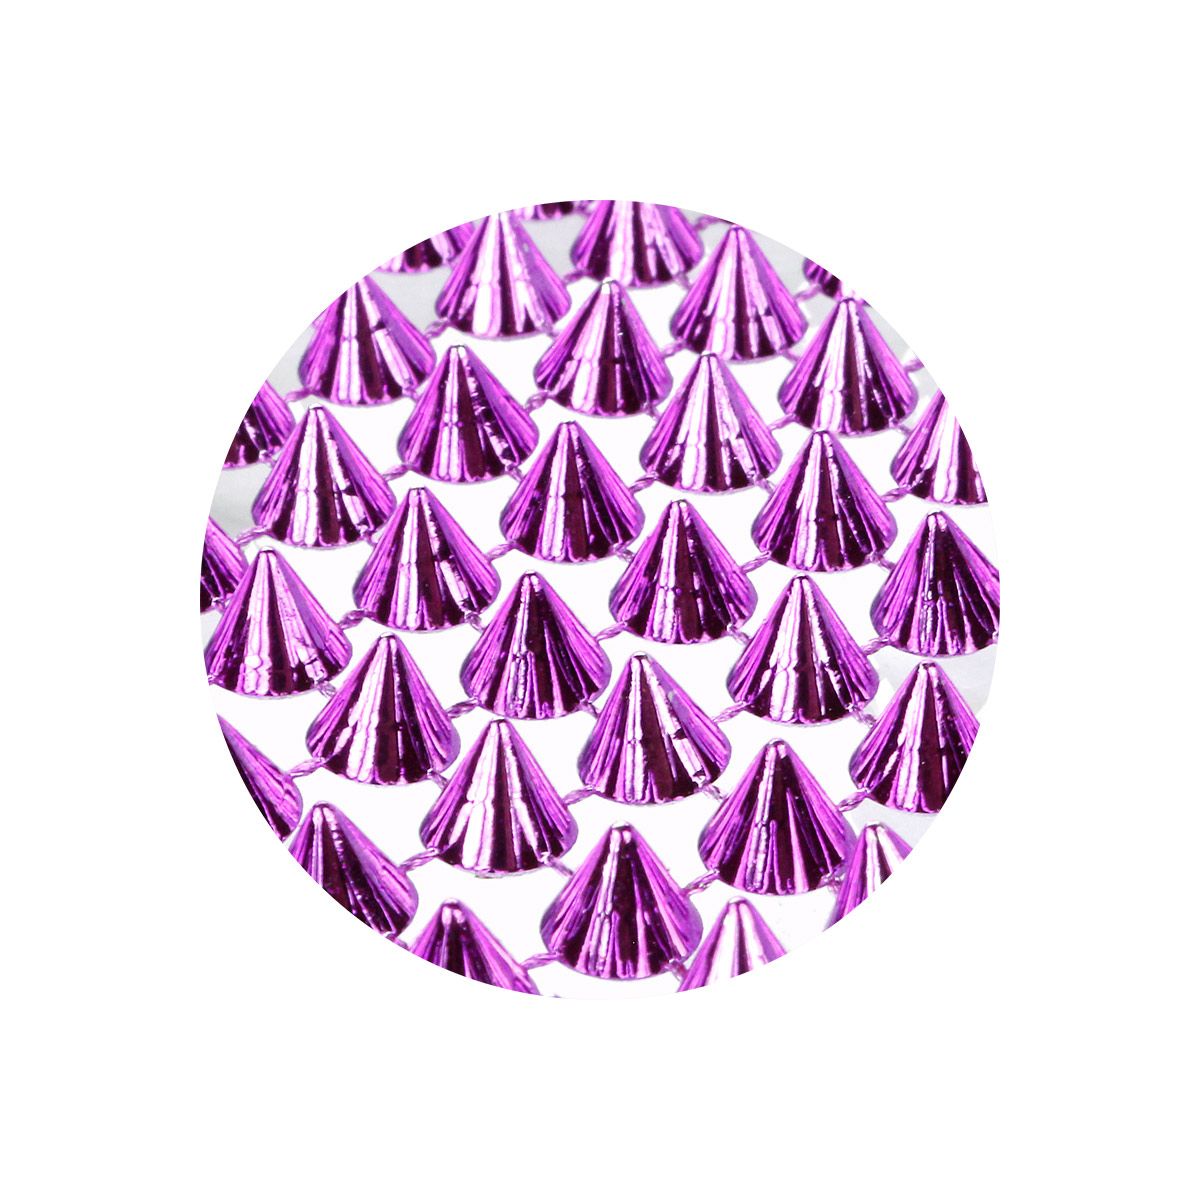 Ćwieki Craft-Fun Series plastikowe różowe Titanum (130x95 mm)